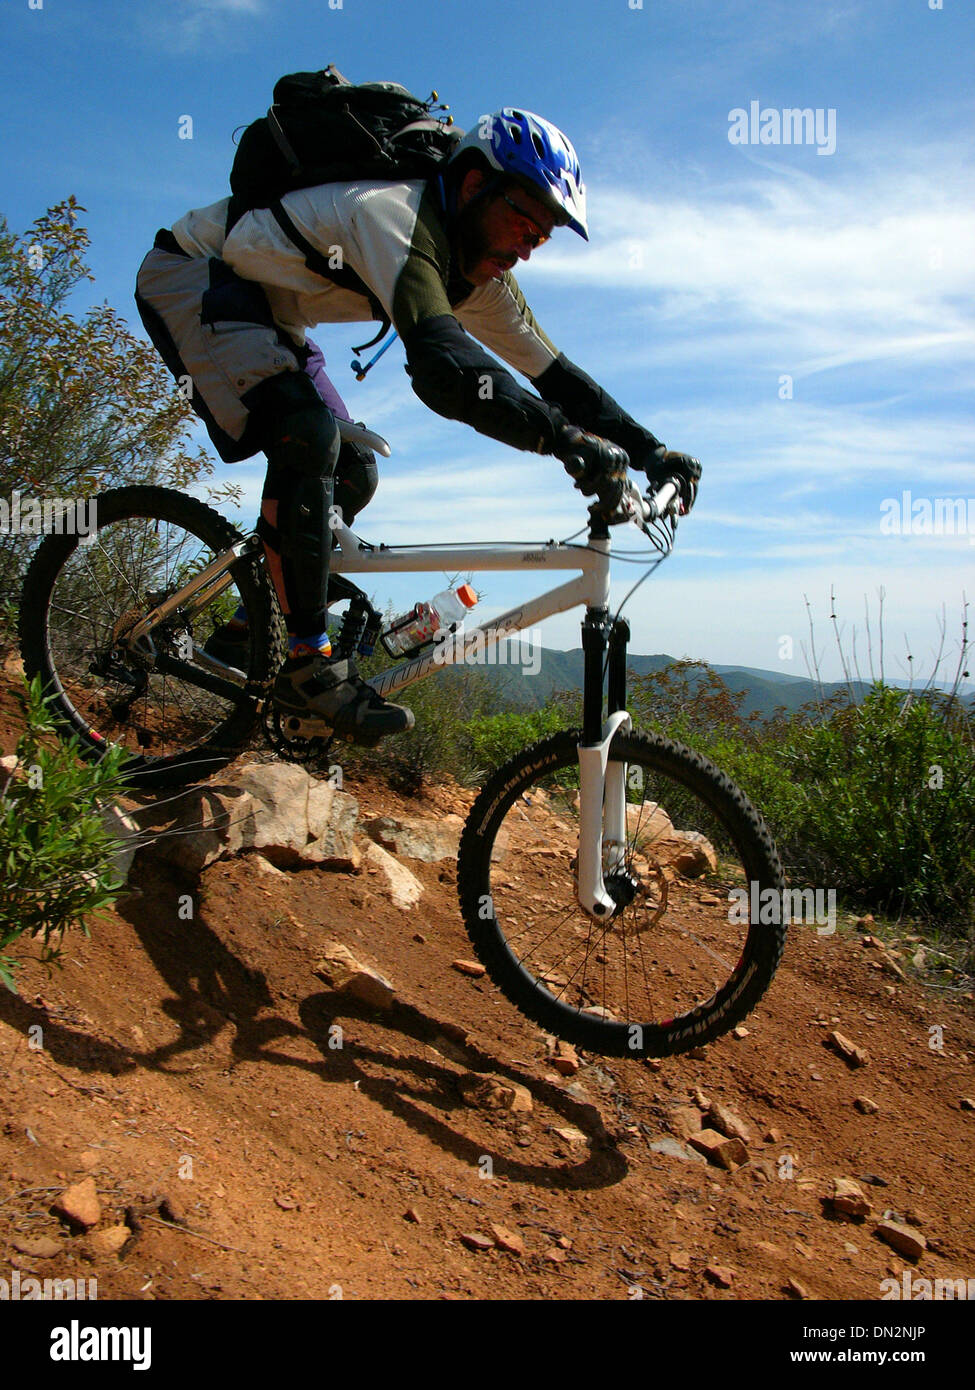 Sep 23, 2006; San Juan, CA, EE.UU.; el ciclismo de montaña es,  aproximadamente, desglosado en cinco categorías: cross country, downhill,  Freeride, Dirt Jump y ensayos/calle de equitación. Sin embargo, la mayoría  de